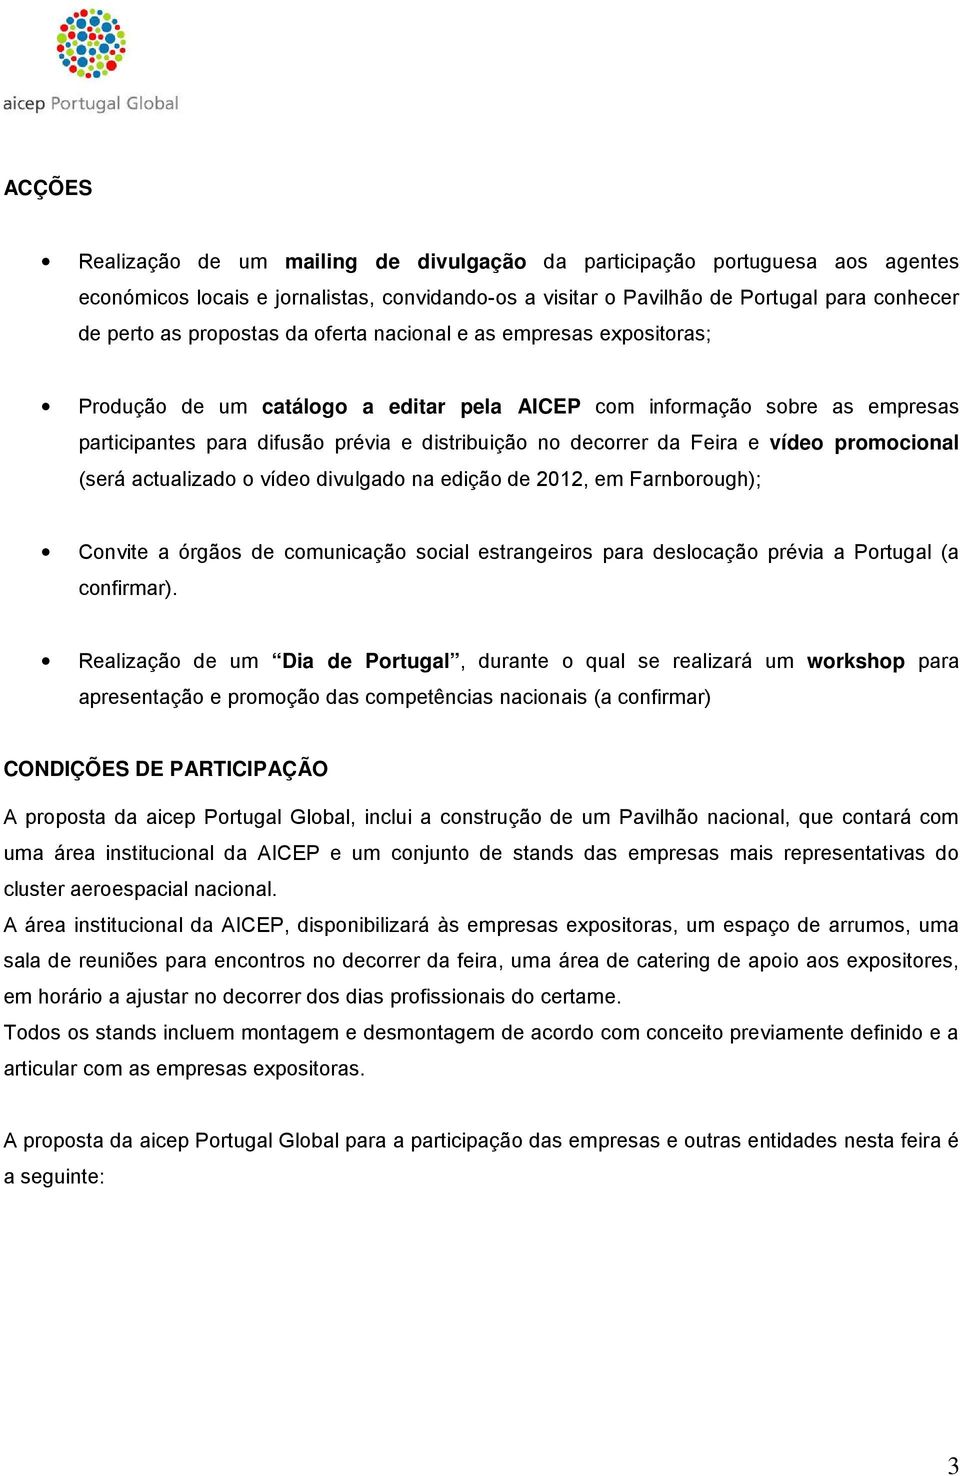 Feira e vídeo promocional (será actualizado o vídeo divulgado na edição de 2012, em Farnborough); Convite a órgãos de comunicação social estrangeiros para deslocação prévia a Portugal (a confirmar).